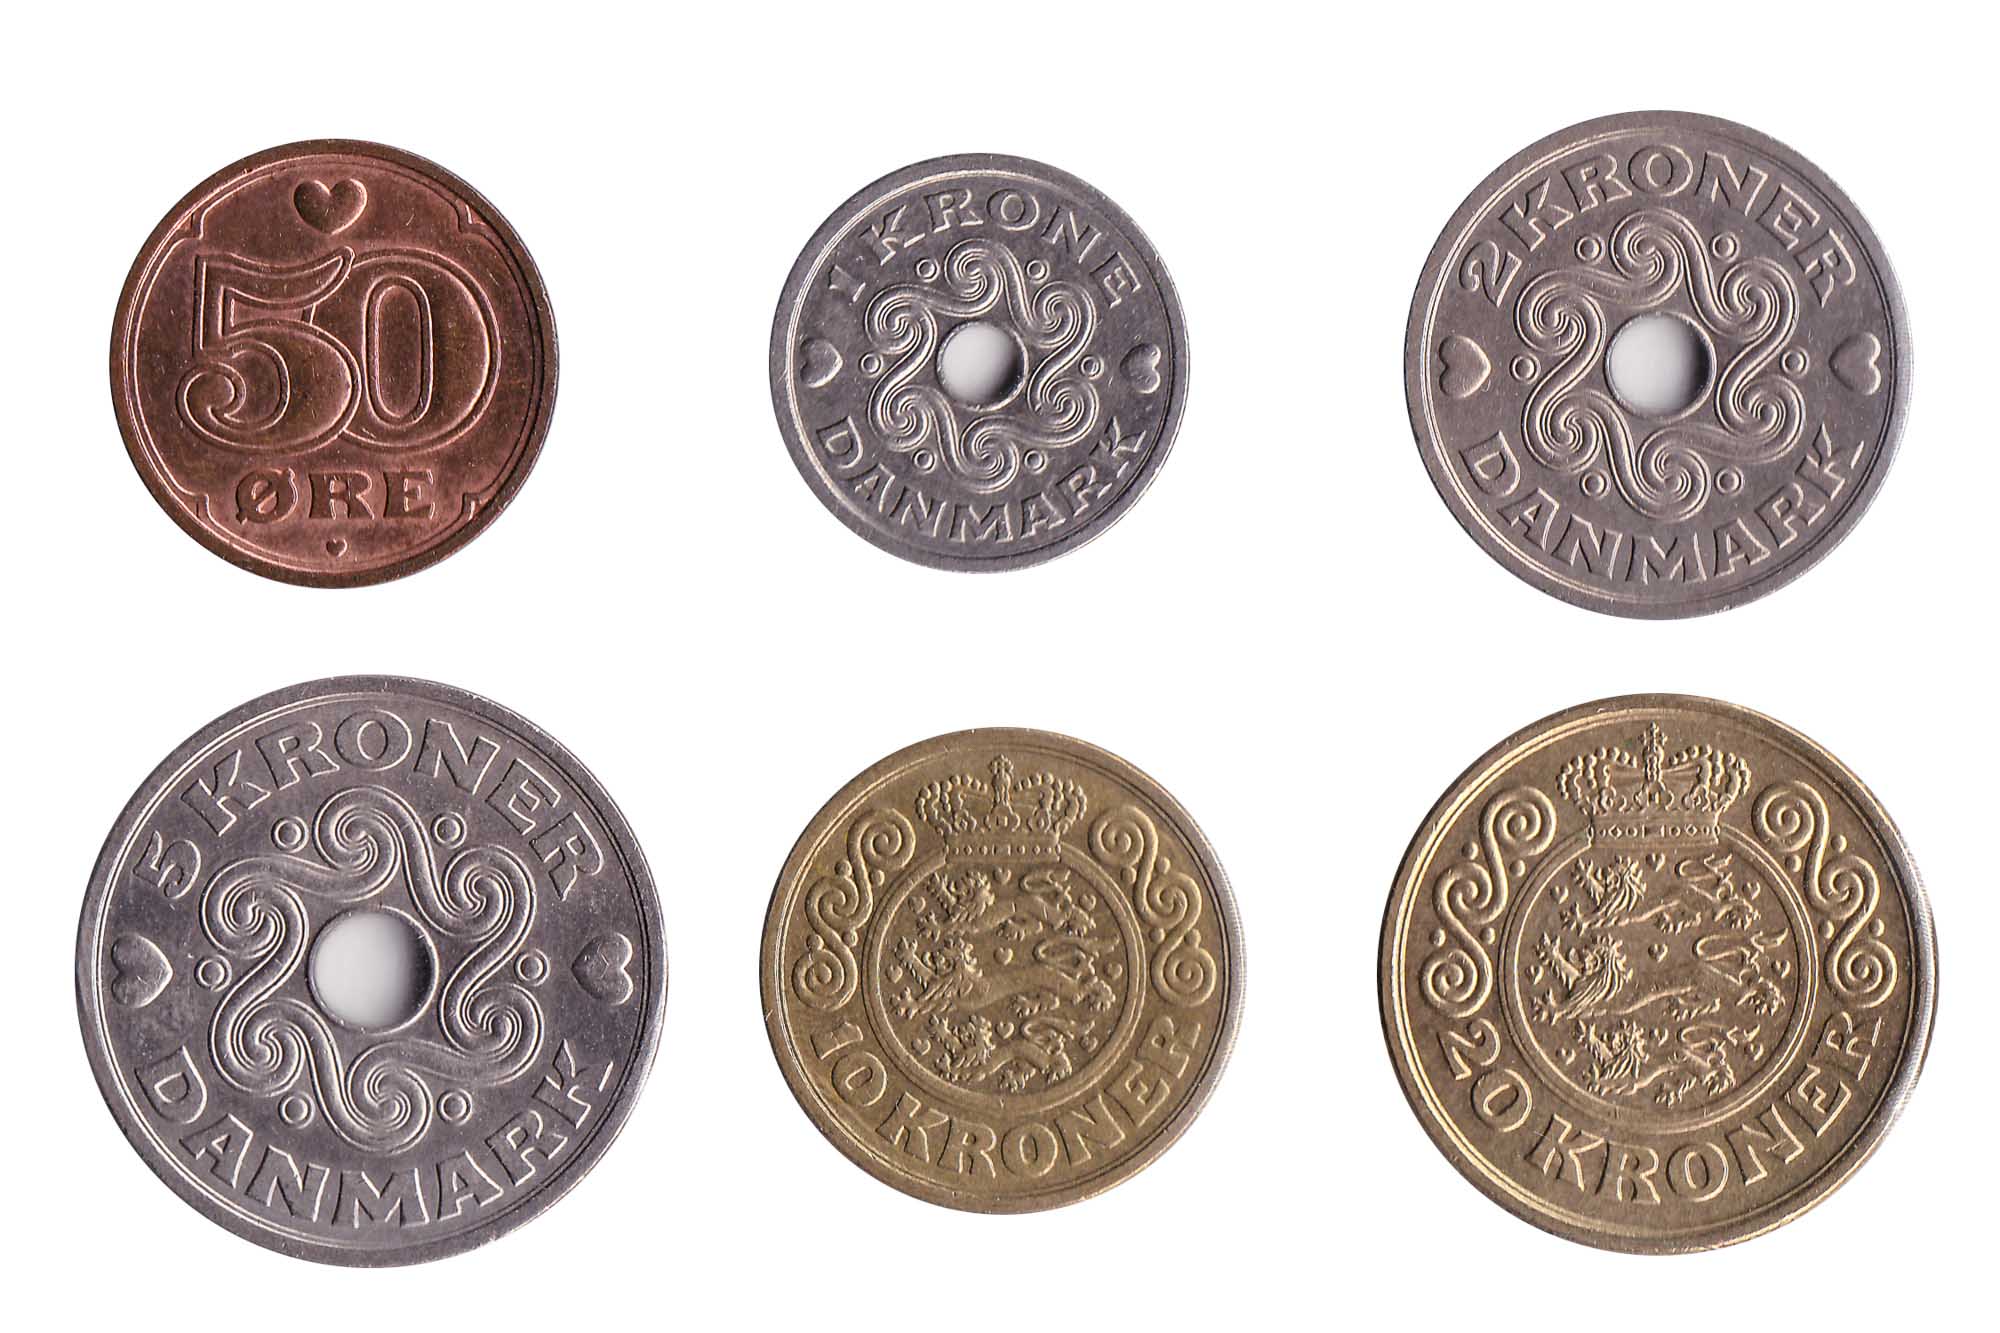 Danish krone coins